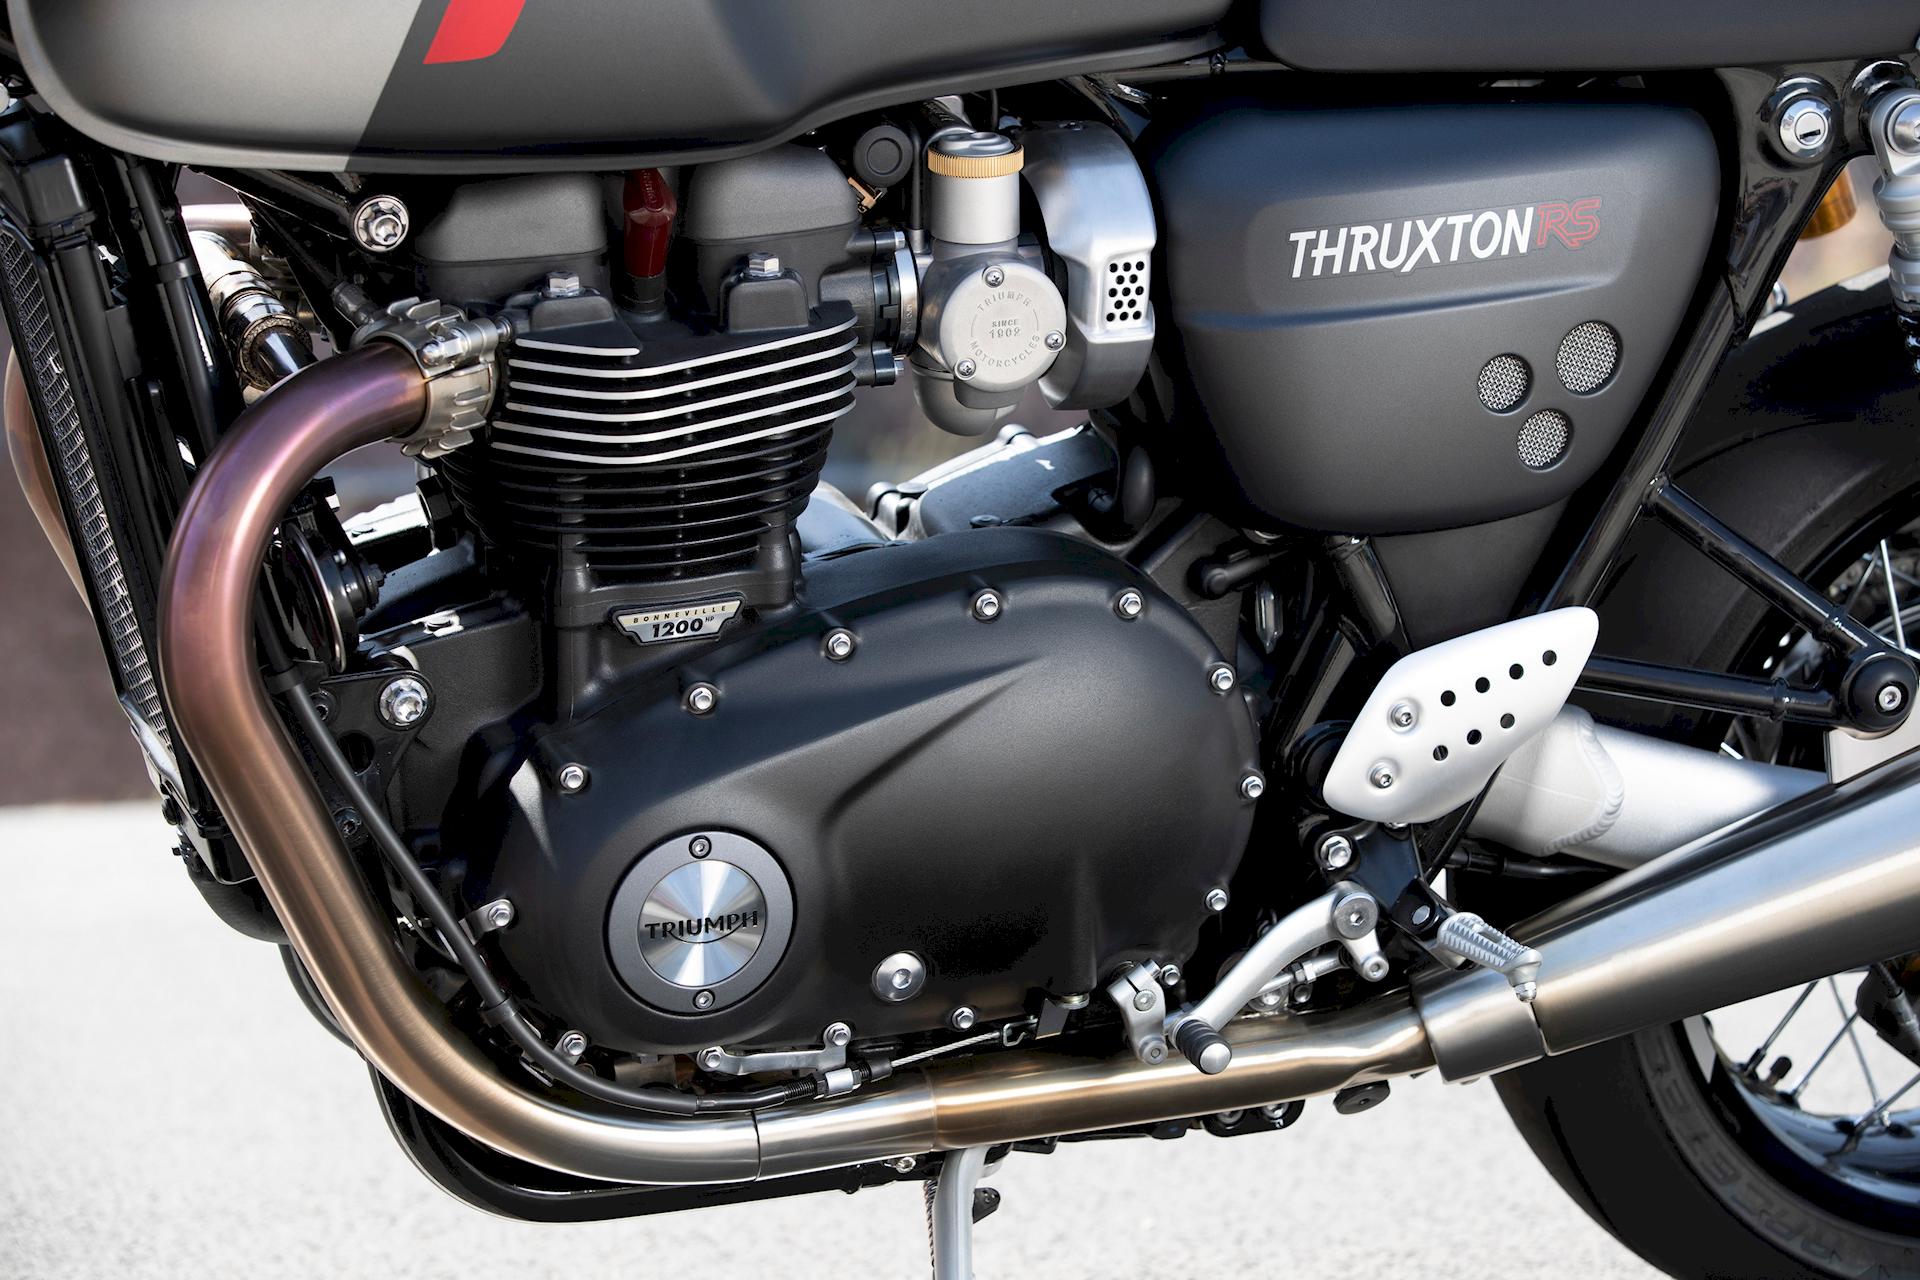 Triumph Thruxton RS 2020